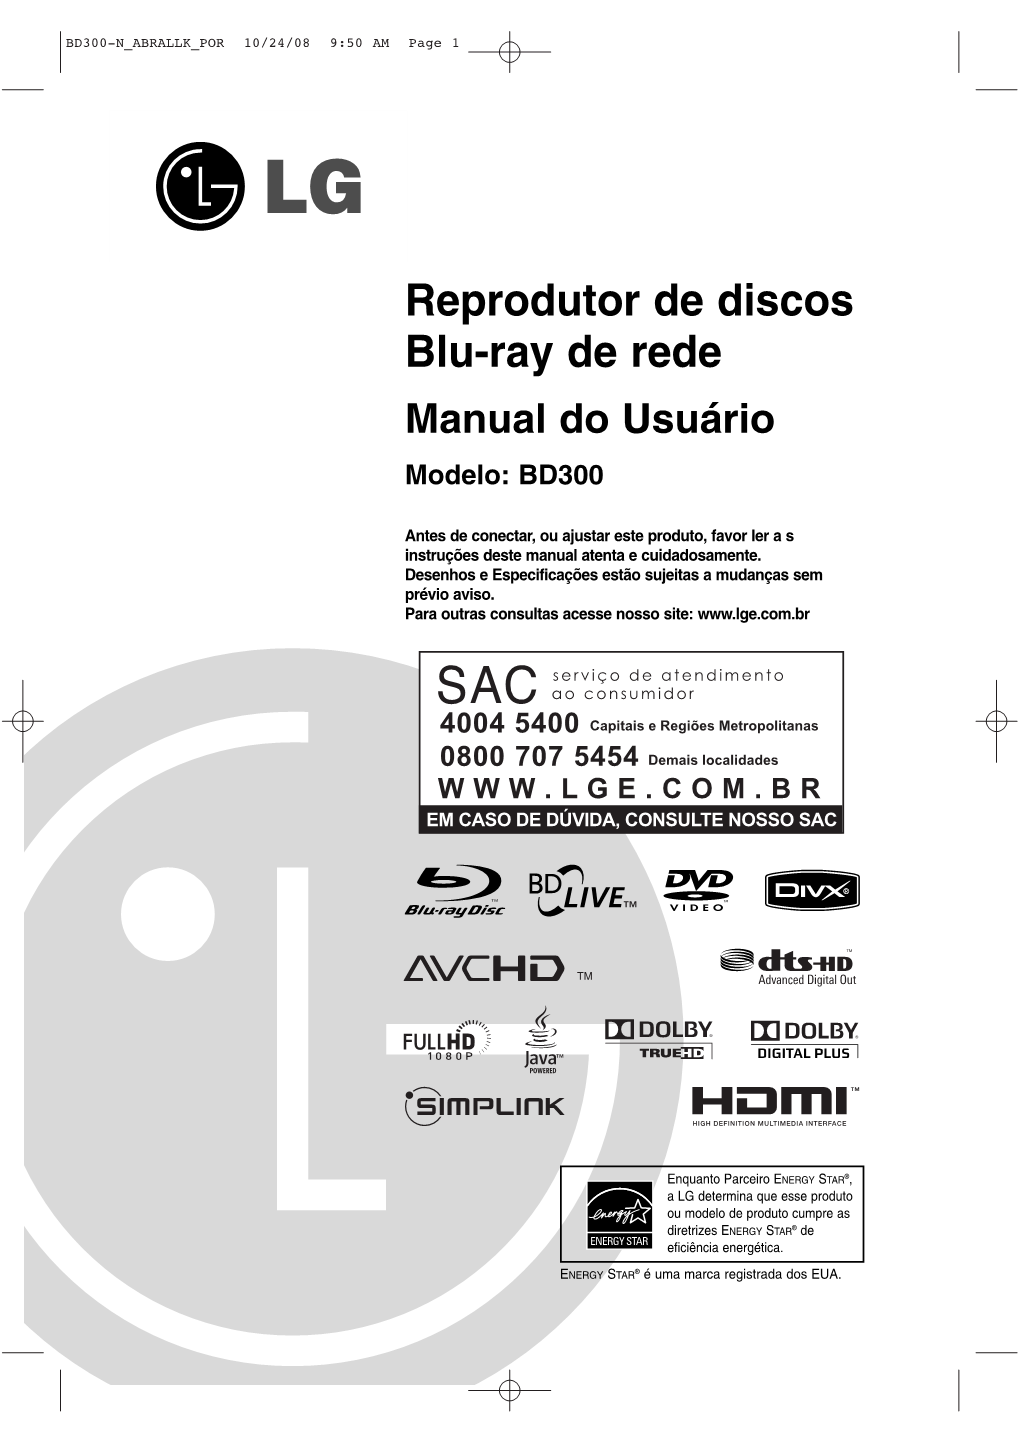 Reprodutor De Discos Blu-Ray De Rede Manual Do Usuário Modelo: BD300